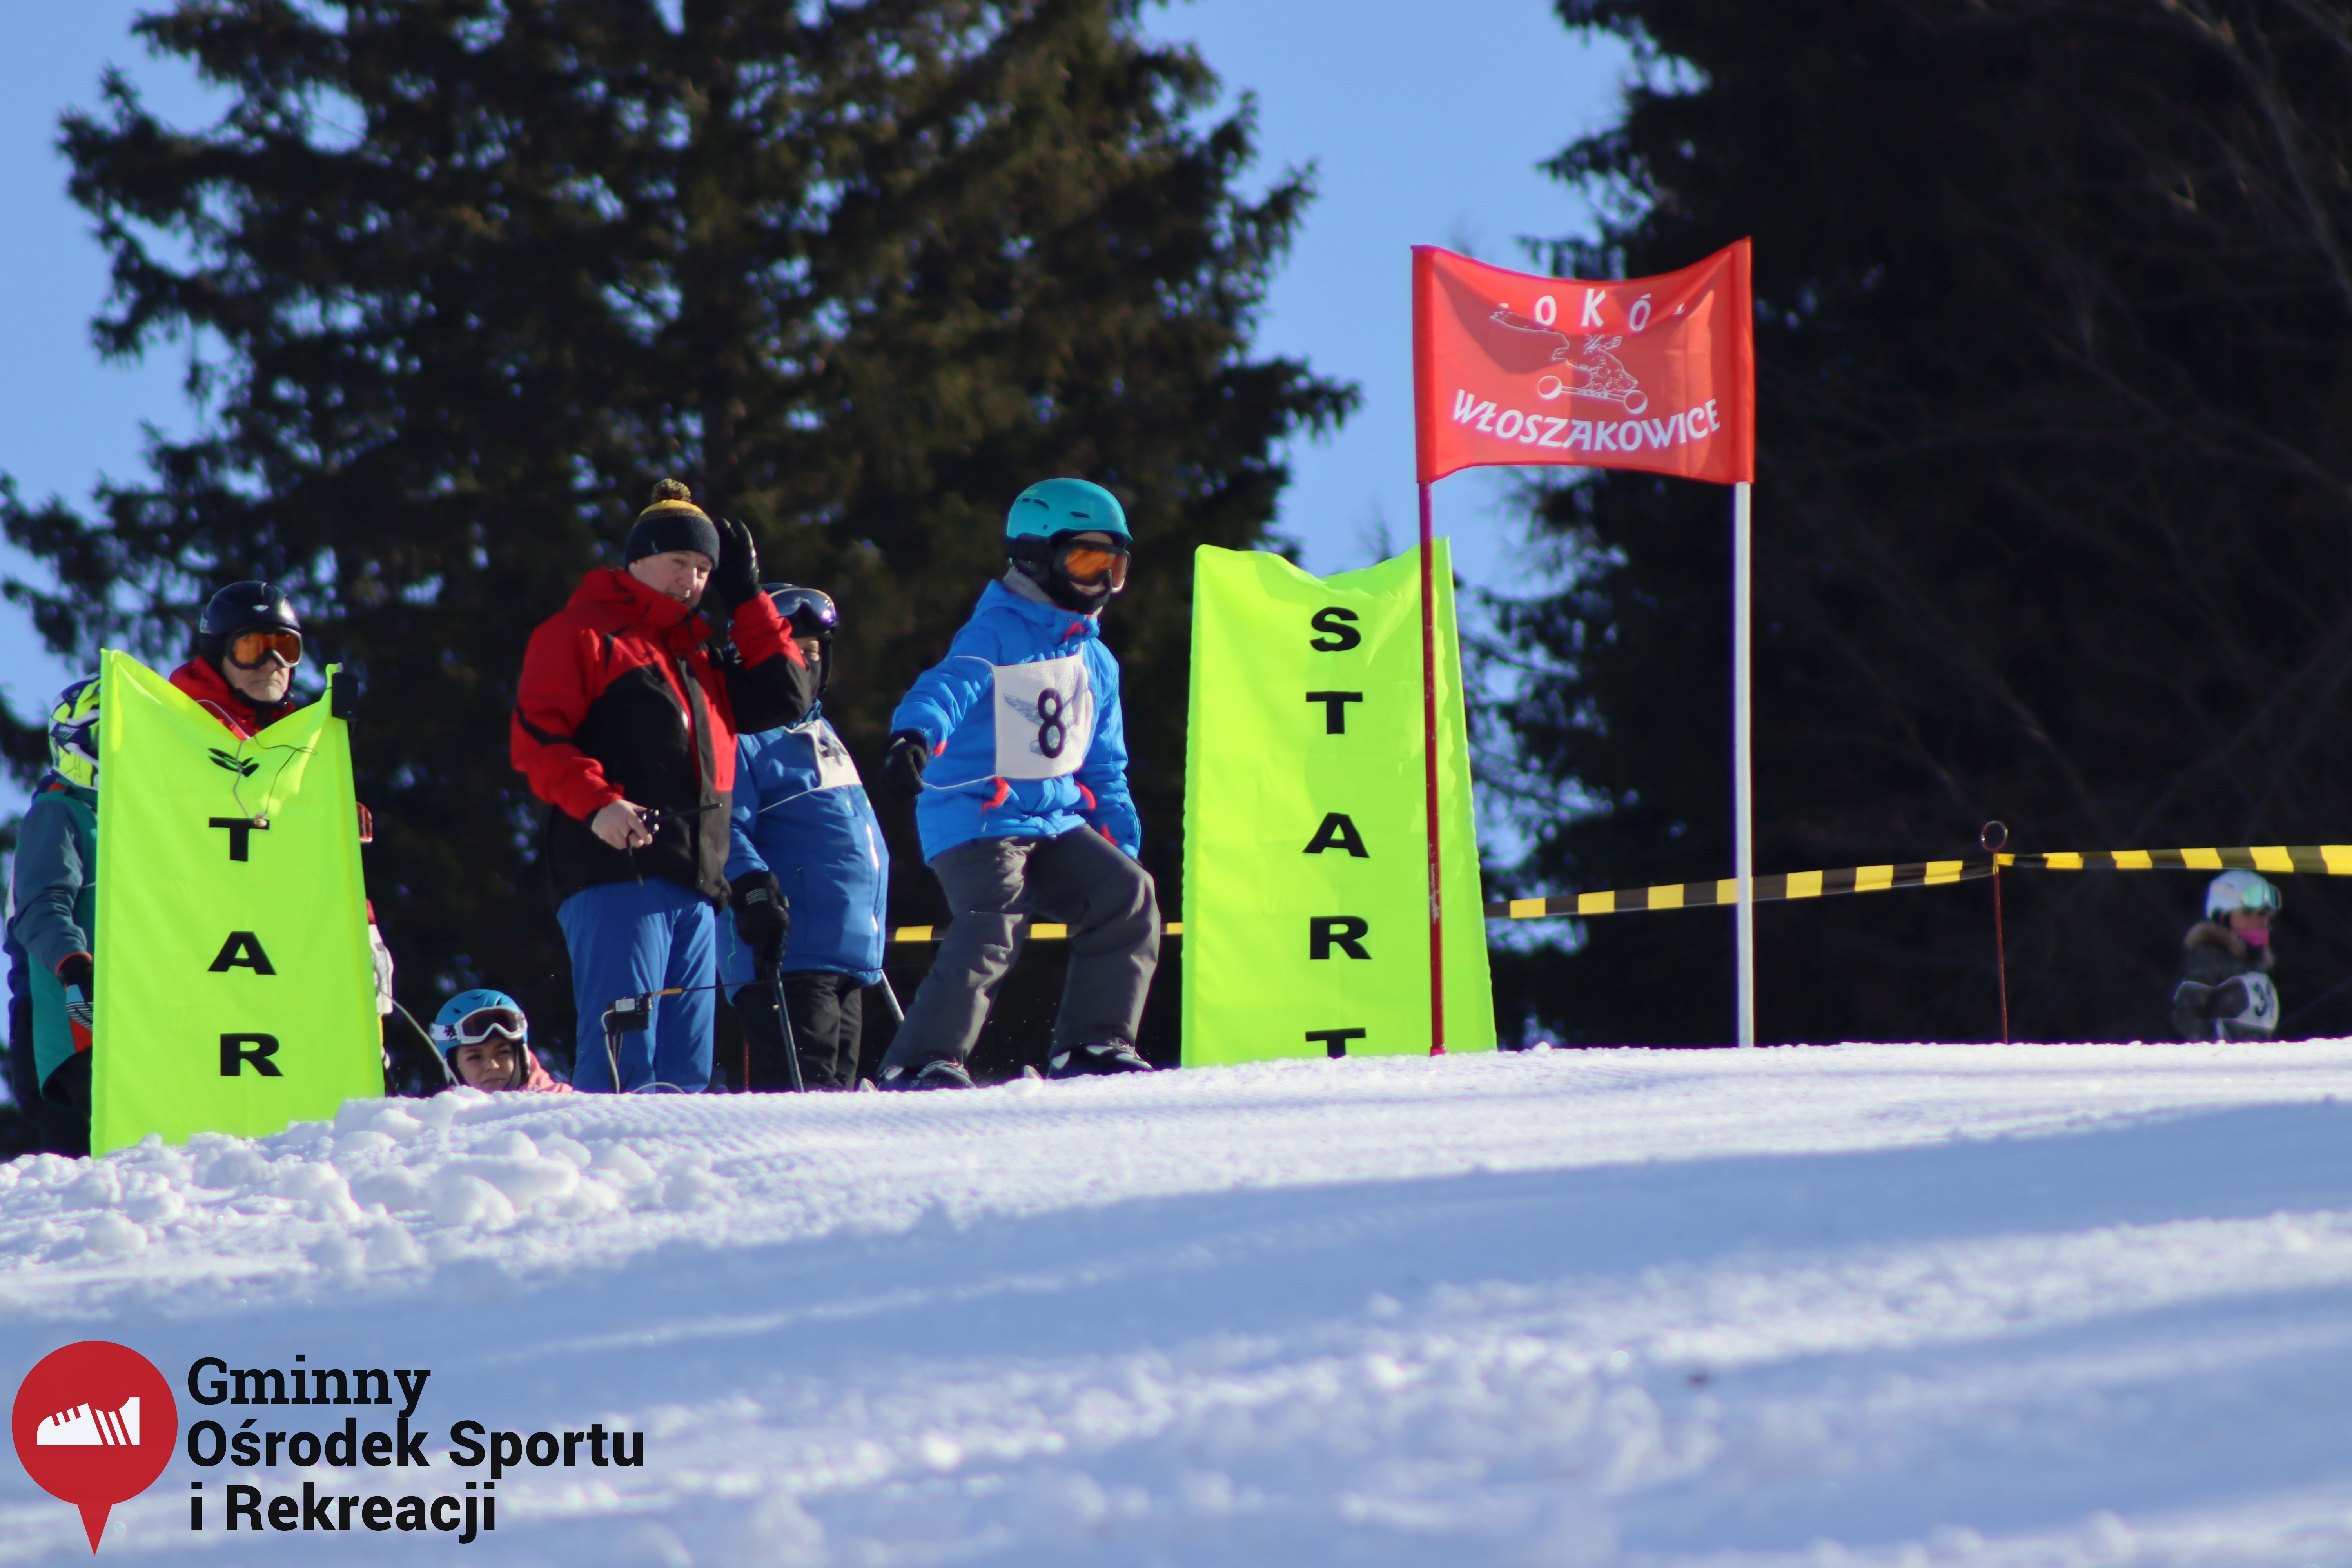 2022.02.12 - 18. Mistrzostwa Gminy Woszakowice w narciarstwie038.jpg - 1,32 MB